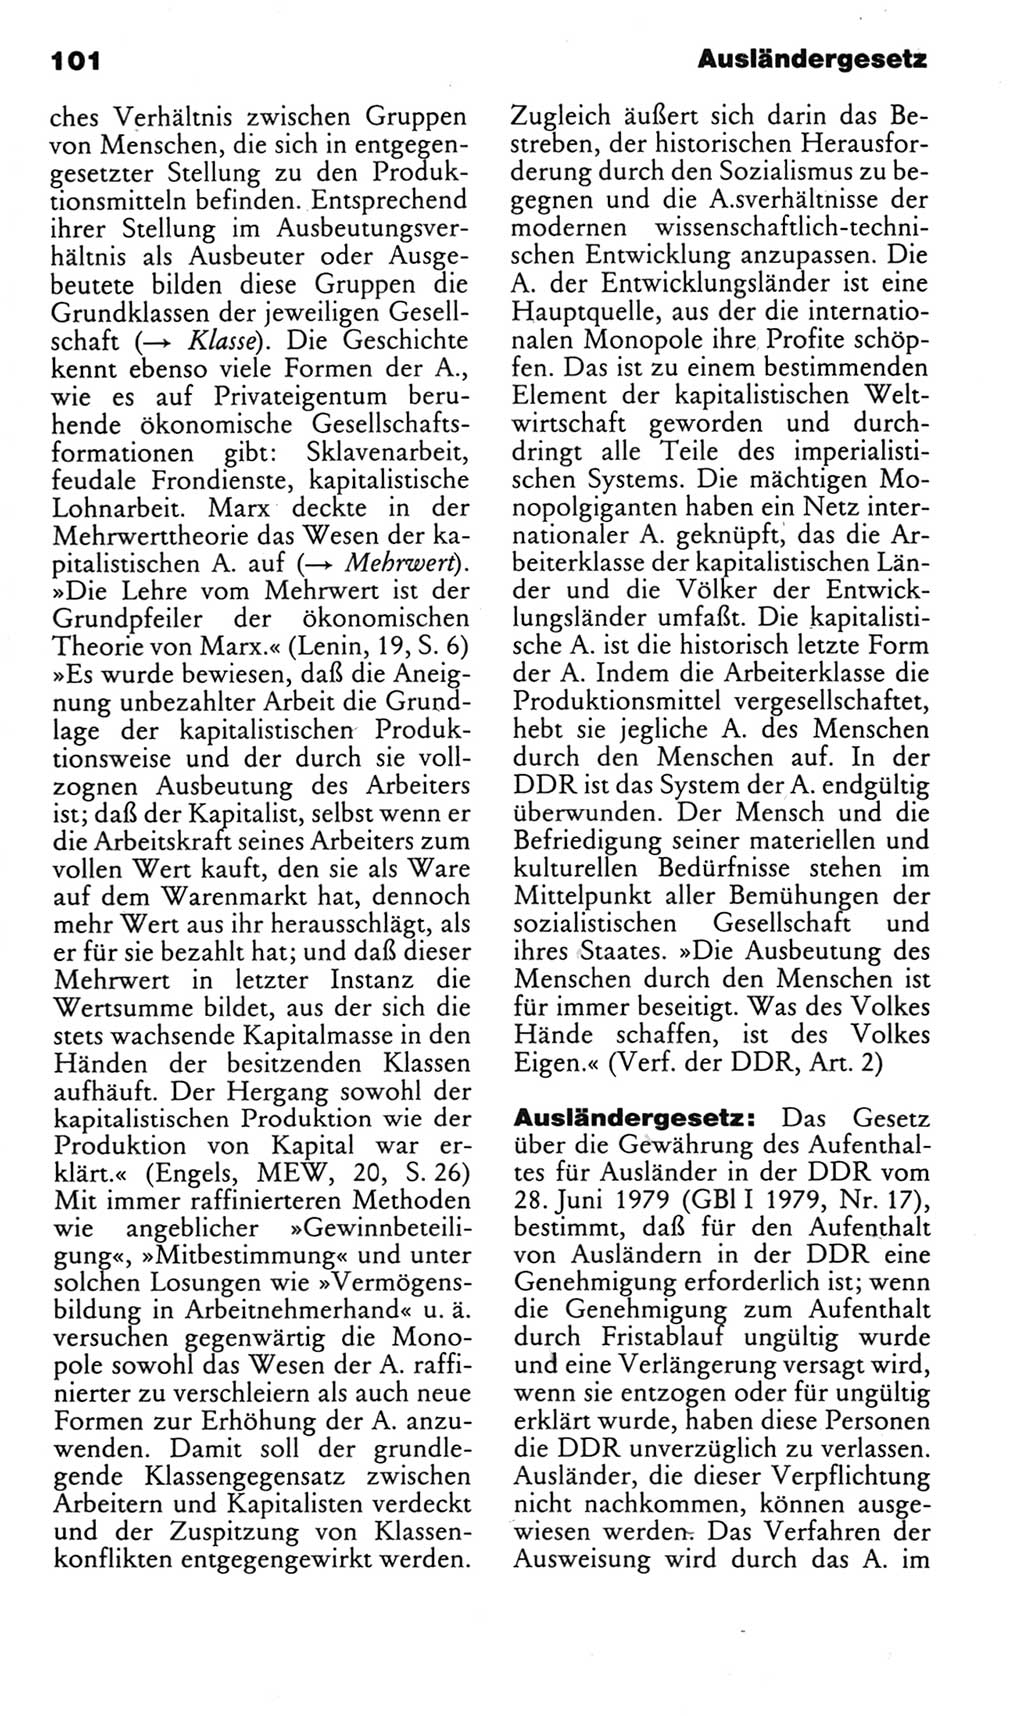 Kleines politisches Wörterbuch [Deutsche Demokratische Republik (DDR)] 1983, Seite 101 (Kl. pol. Wb. DDR 1983, S. 101)